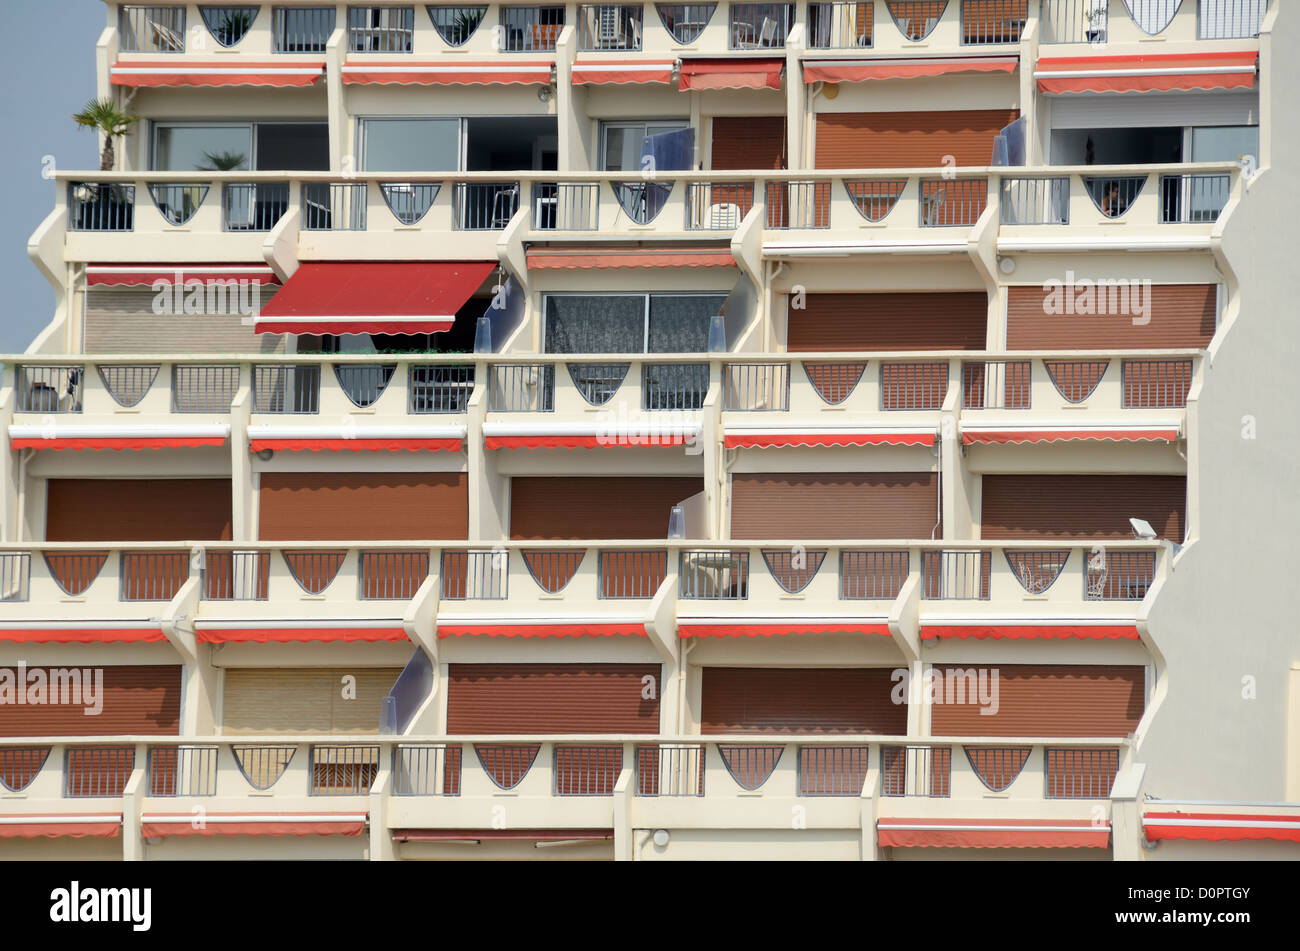 Façade, fenêtres et balcons de l'immeuble Acapulco à la Grande-Motte Resort Town ou New Town Hérault France Banque D'Images